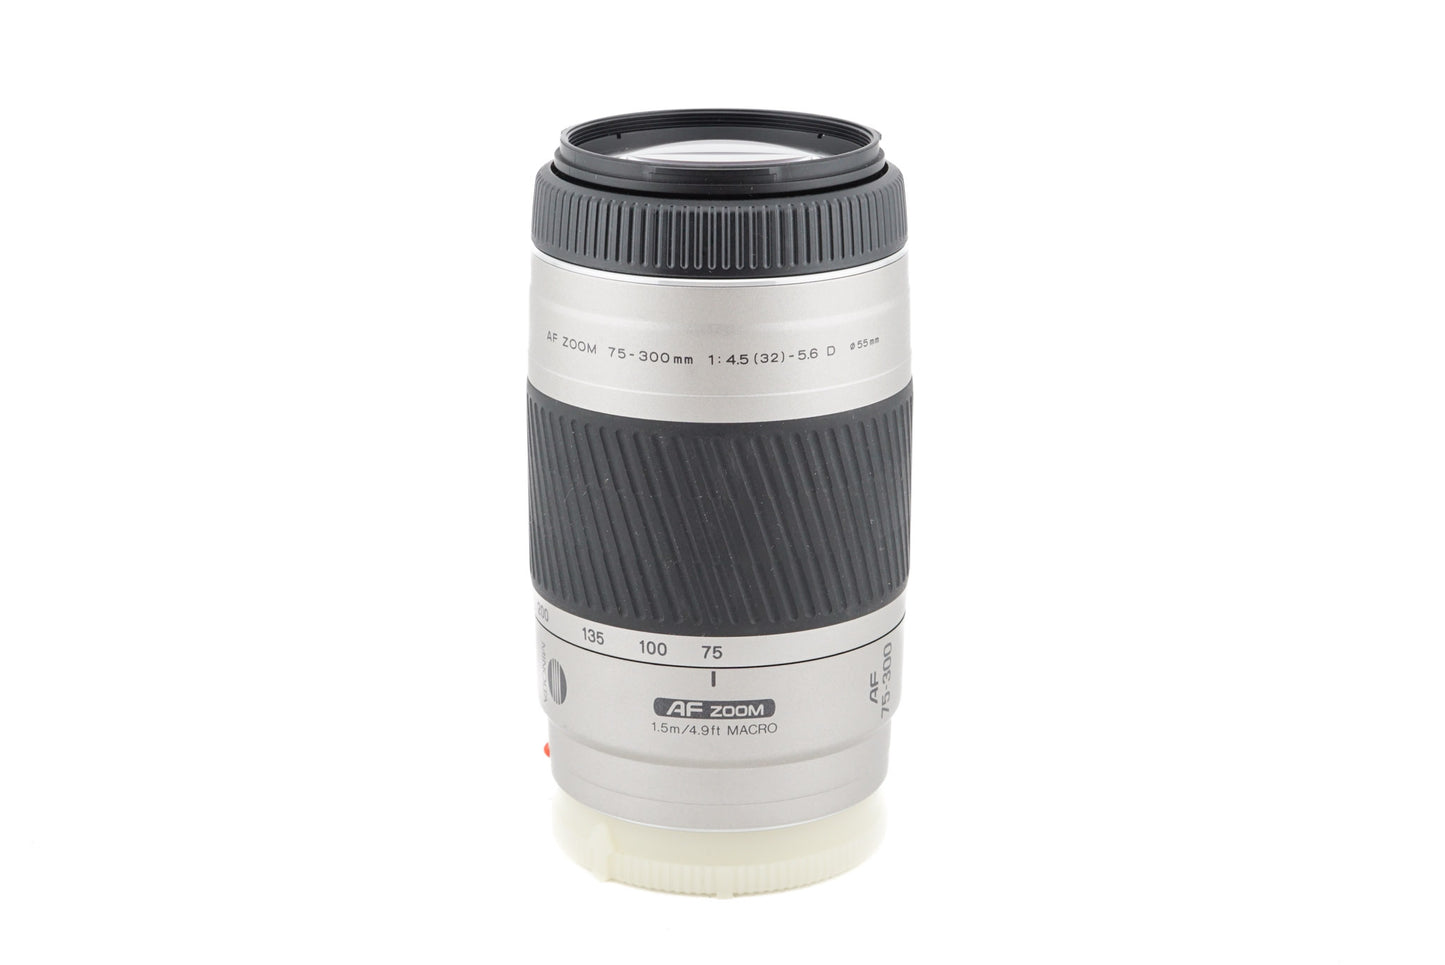 Minolta 75-300mm f4.5-5.6 D Macro - Lens